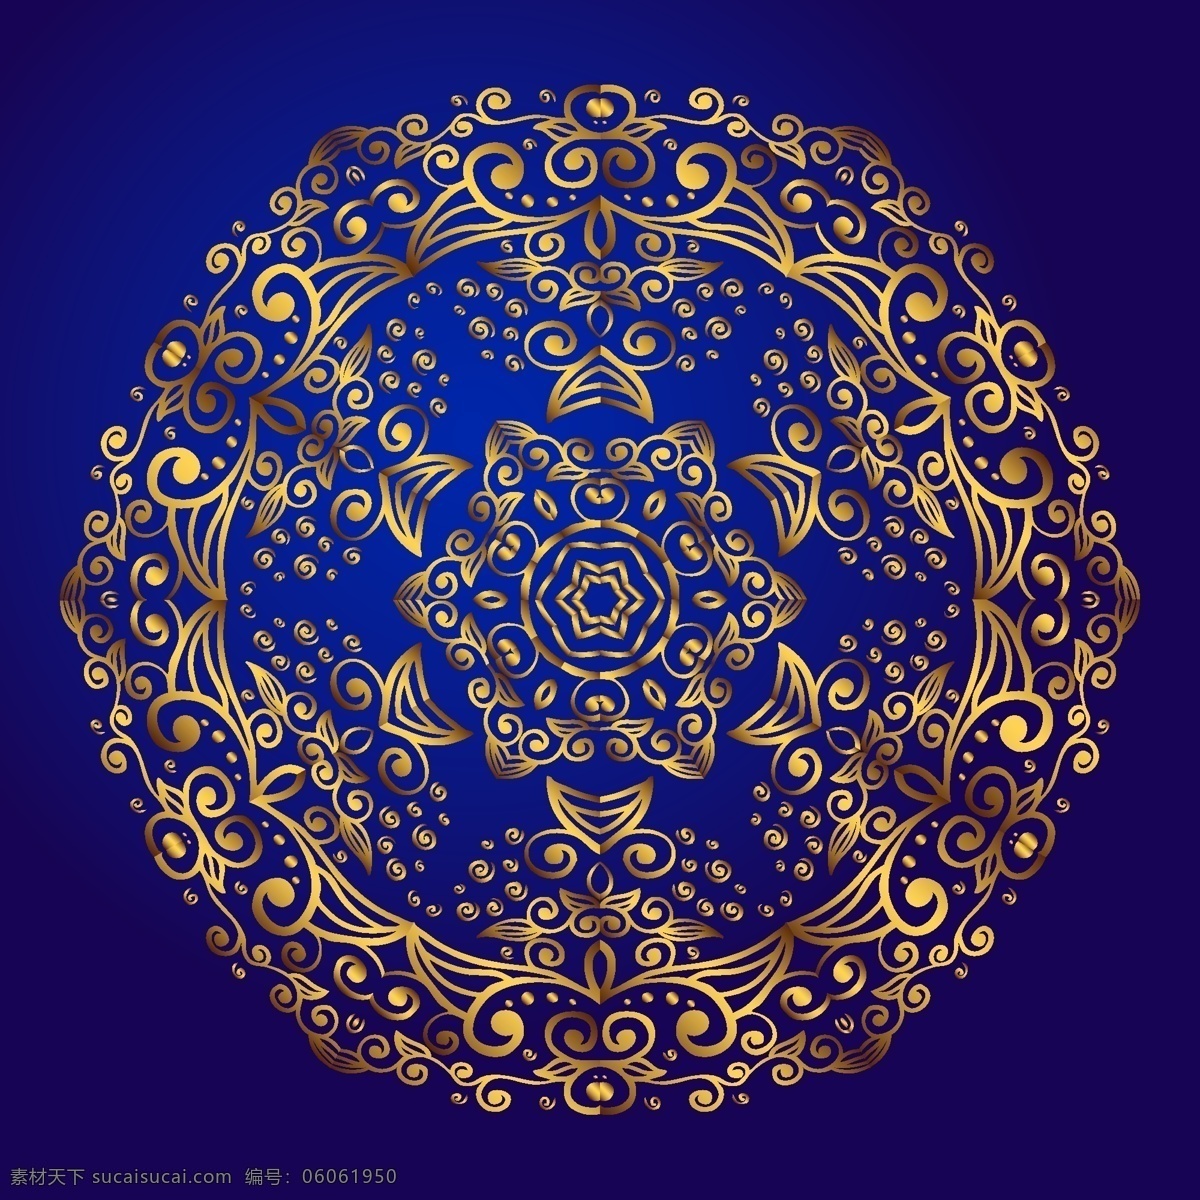 曼陀罗 护身符 蓝色 背景 上 神秘 金 符号 印度 甘尼 沙 黄金 上帝 印度教 图案 印刷品 矢量 莲花 欧姆 火 湿婆 书籍 神圣 波西 米亚 纹身